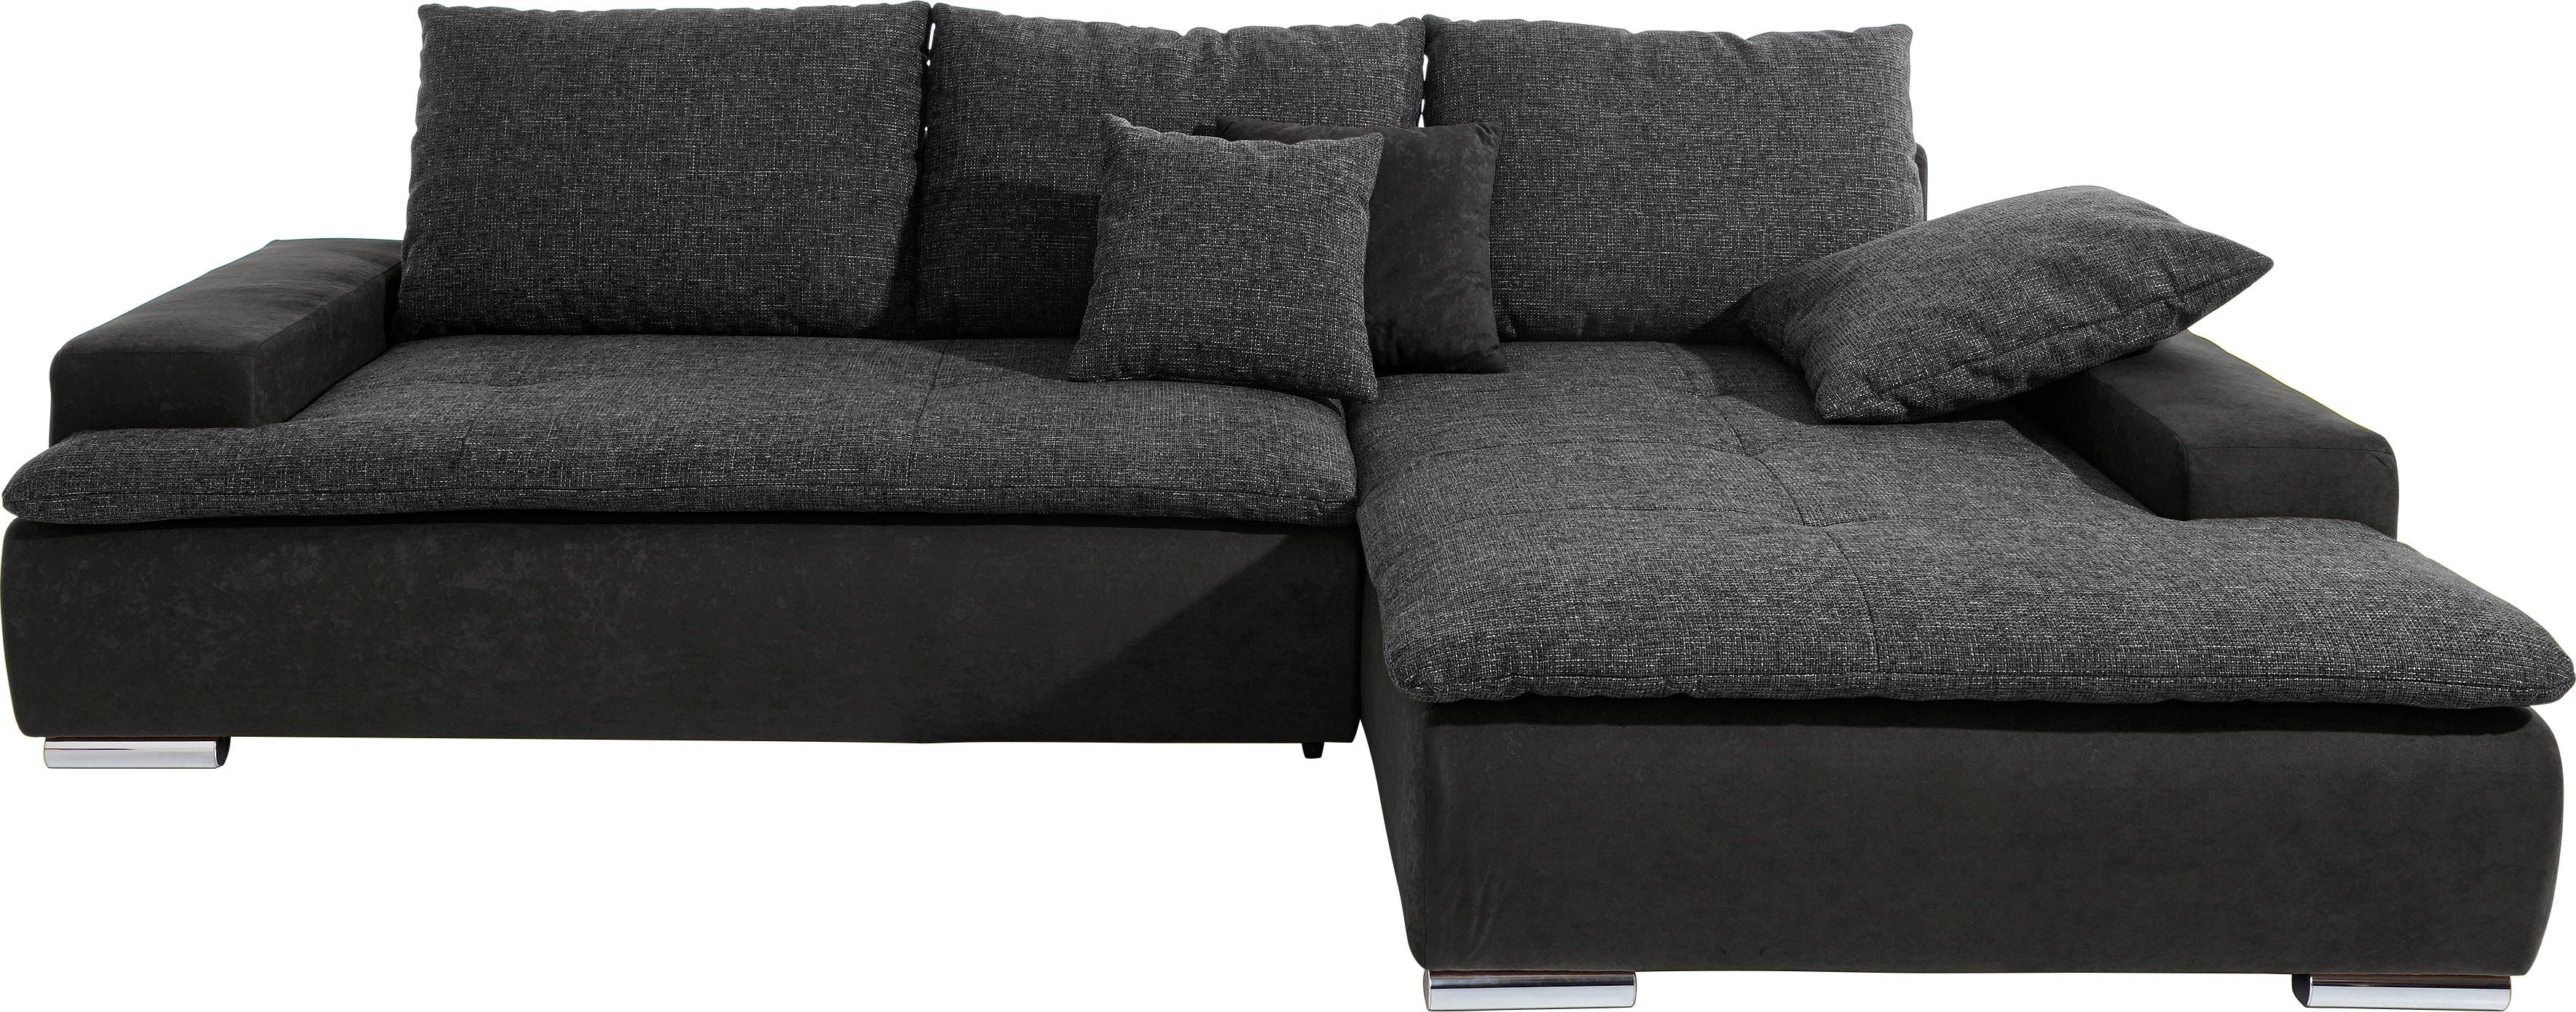 Mr. Couch Ecksofa Haiti L-Form, wahlweise mit Kaltschaum (140kg Belastung/Sitz), RGB-Beleuchtung